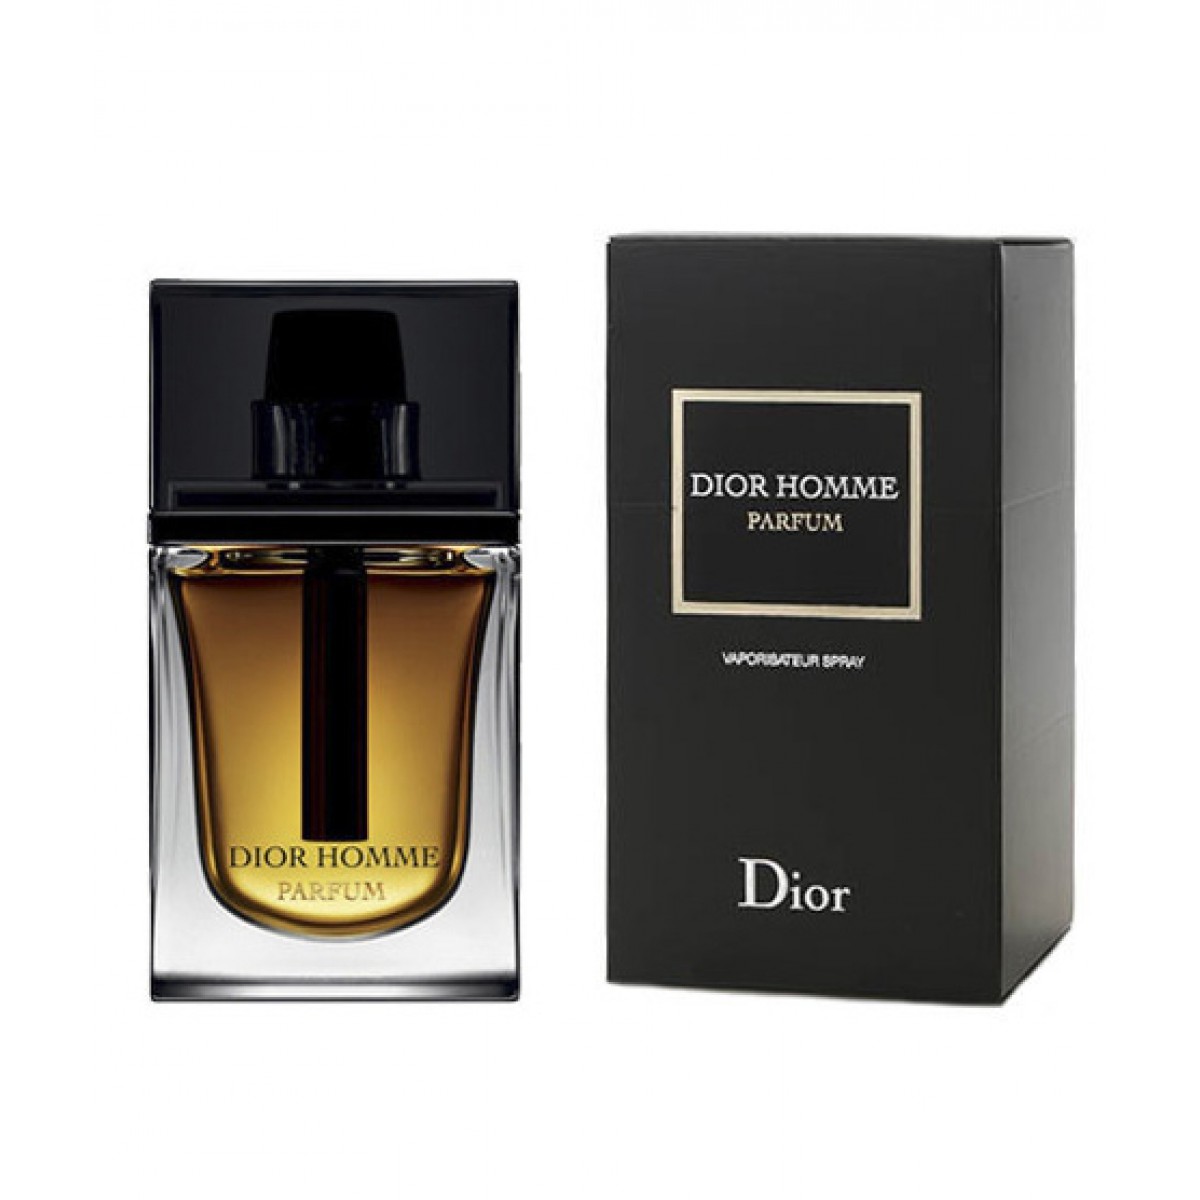 Dior Homme Parfum 75ml - Mobola Perfume 